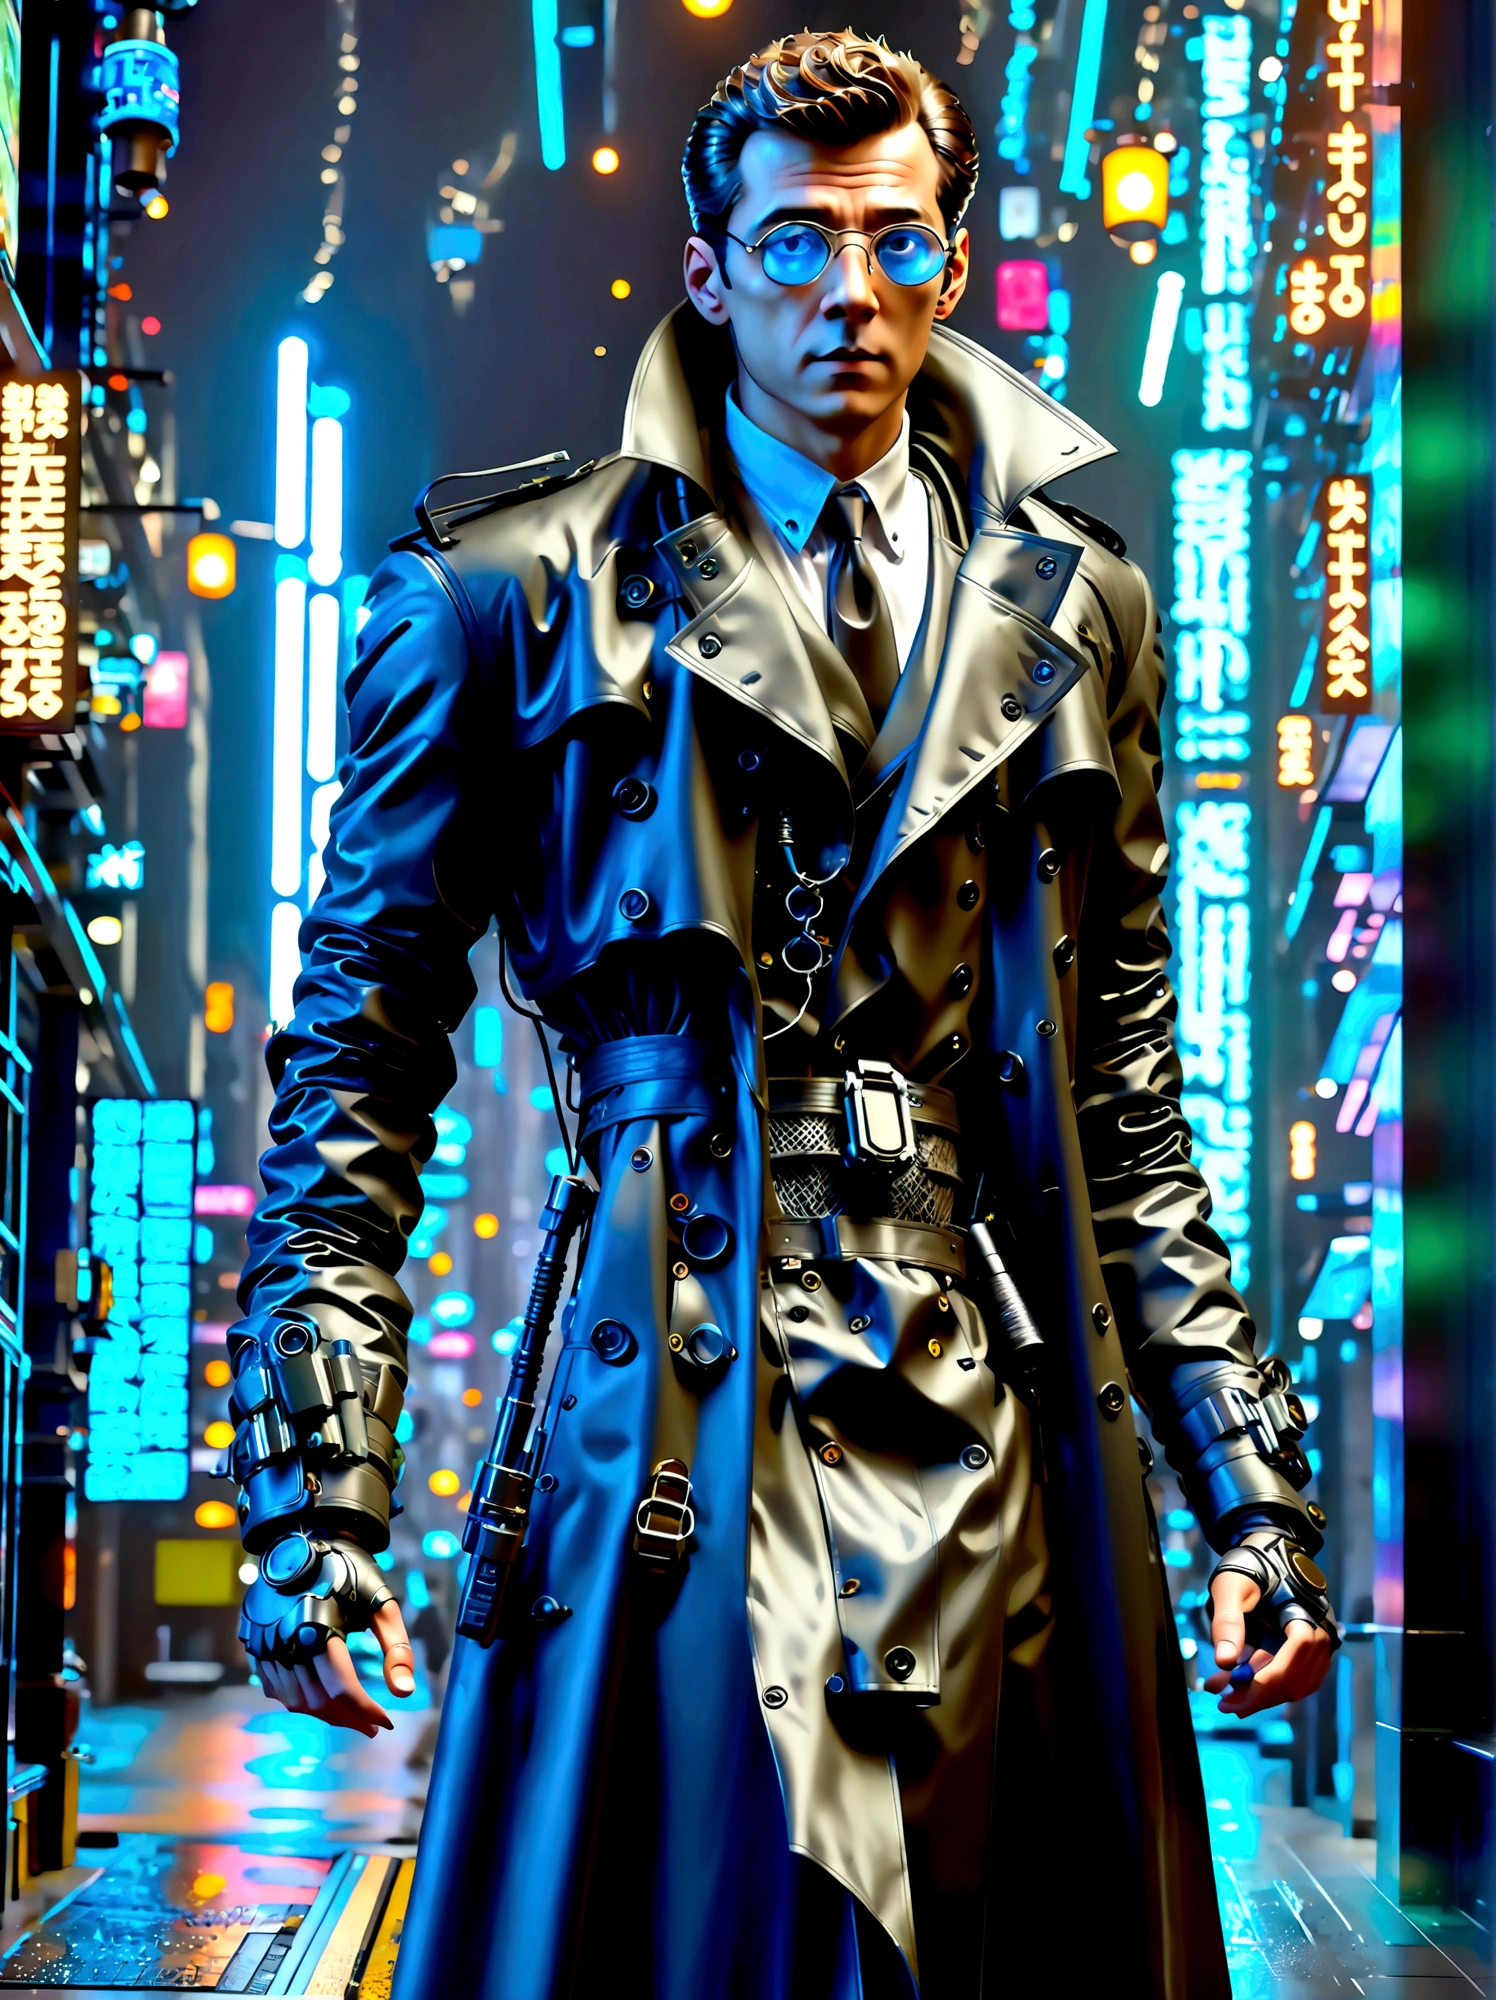 (melhor qualidade, 8K,alta resolução,Obra de arte:1.2), ultra-detalhado, (realista, photorealista), (Detective Gadget em um casaco preto elegante:1.5), (casaco preto:1.7), de pé com confiança, apresentando gadgets futuristas avançados, detalhes em azul elétrico em seus gadgets, braços mecânicos estendendo-se de seu casaco, olhos afiados e determinados, paisagem urbana futurista ao fundo, bokeh, iluminação de estúdio, foco nitído